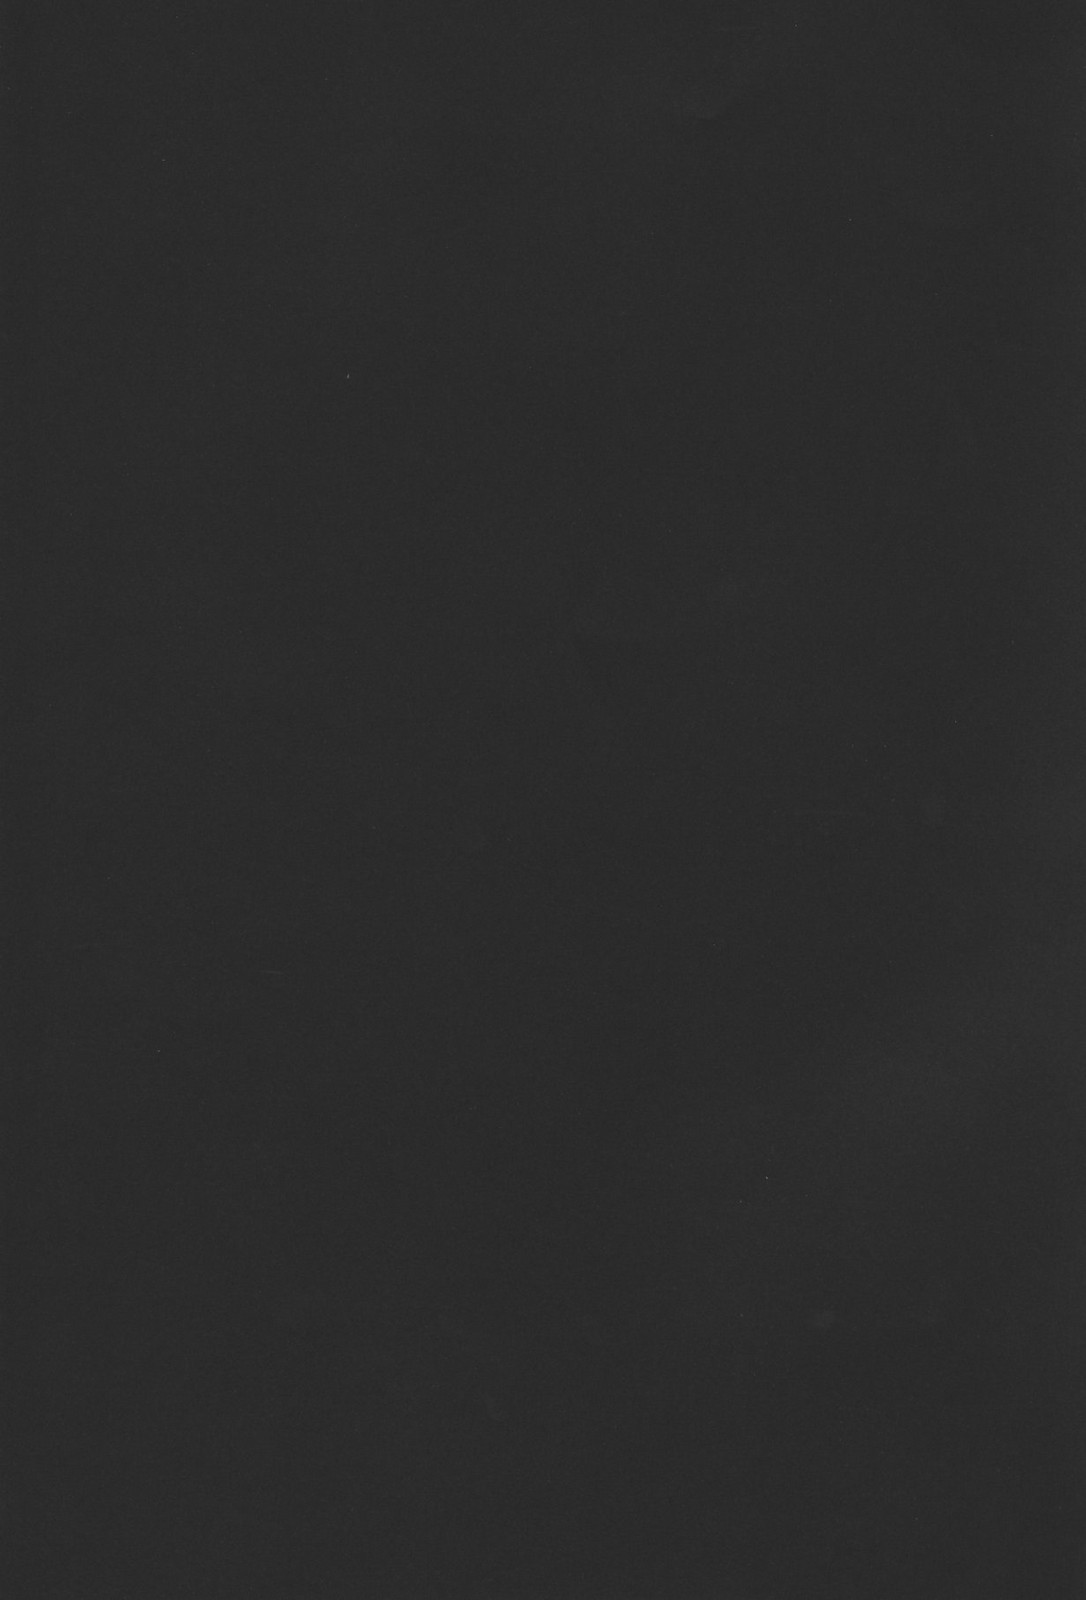 [Don Shigeru, CRC] Fog Field (Darker Than Black) 